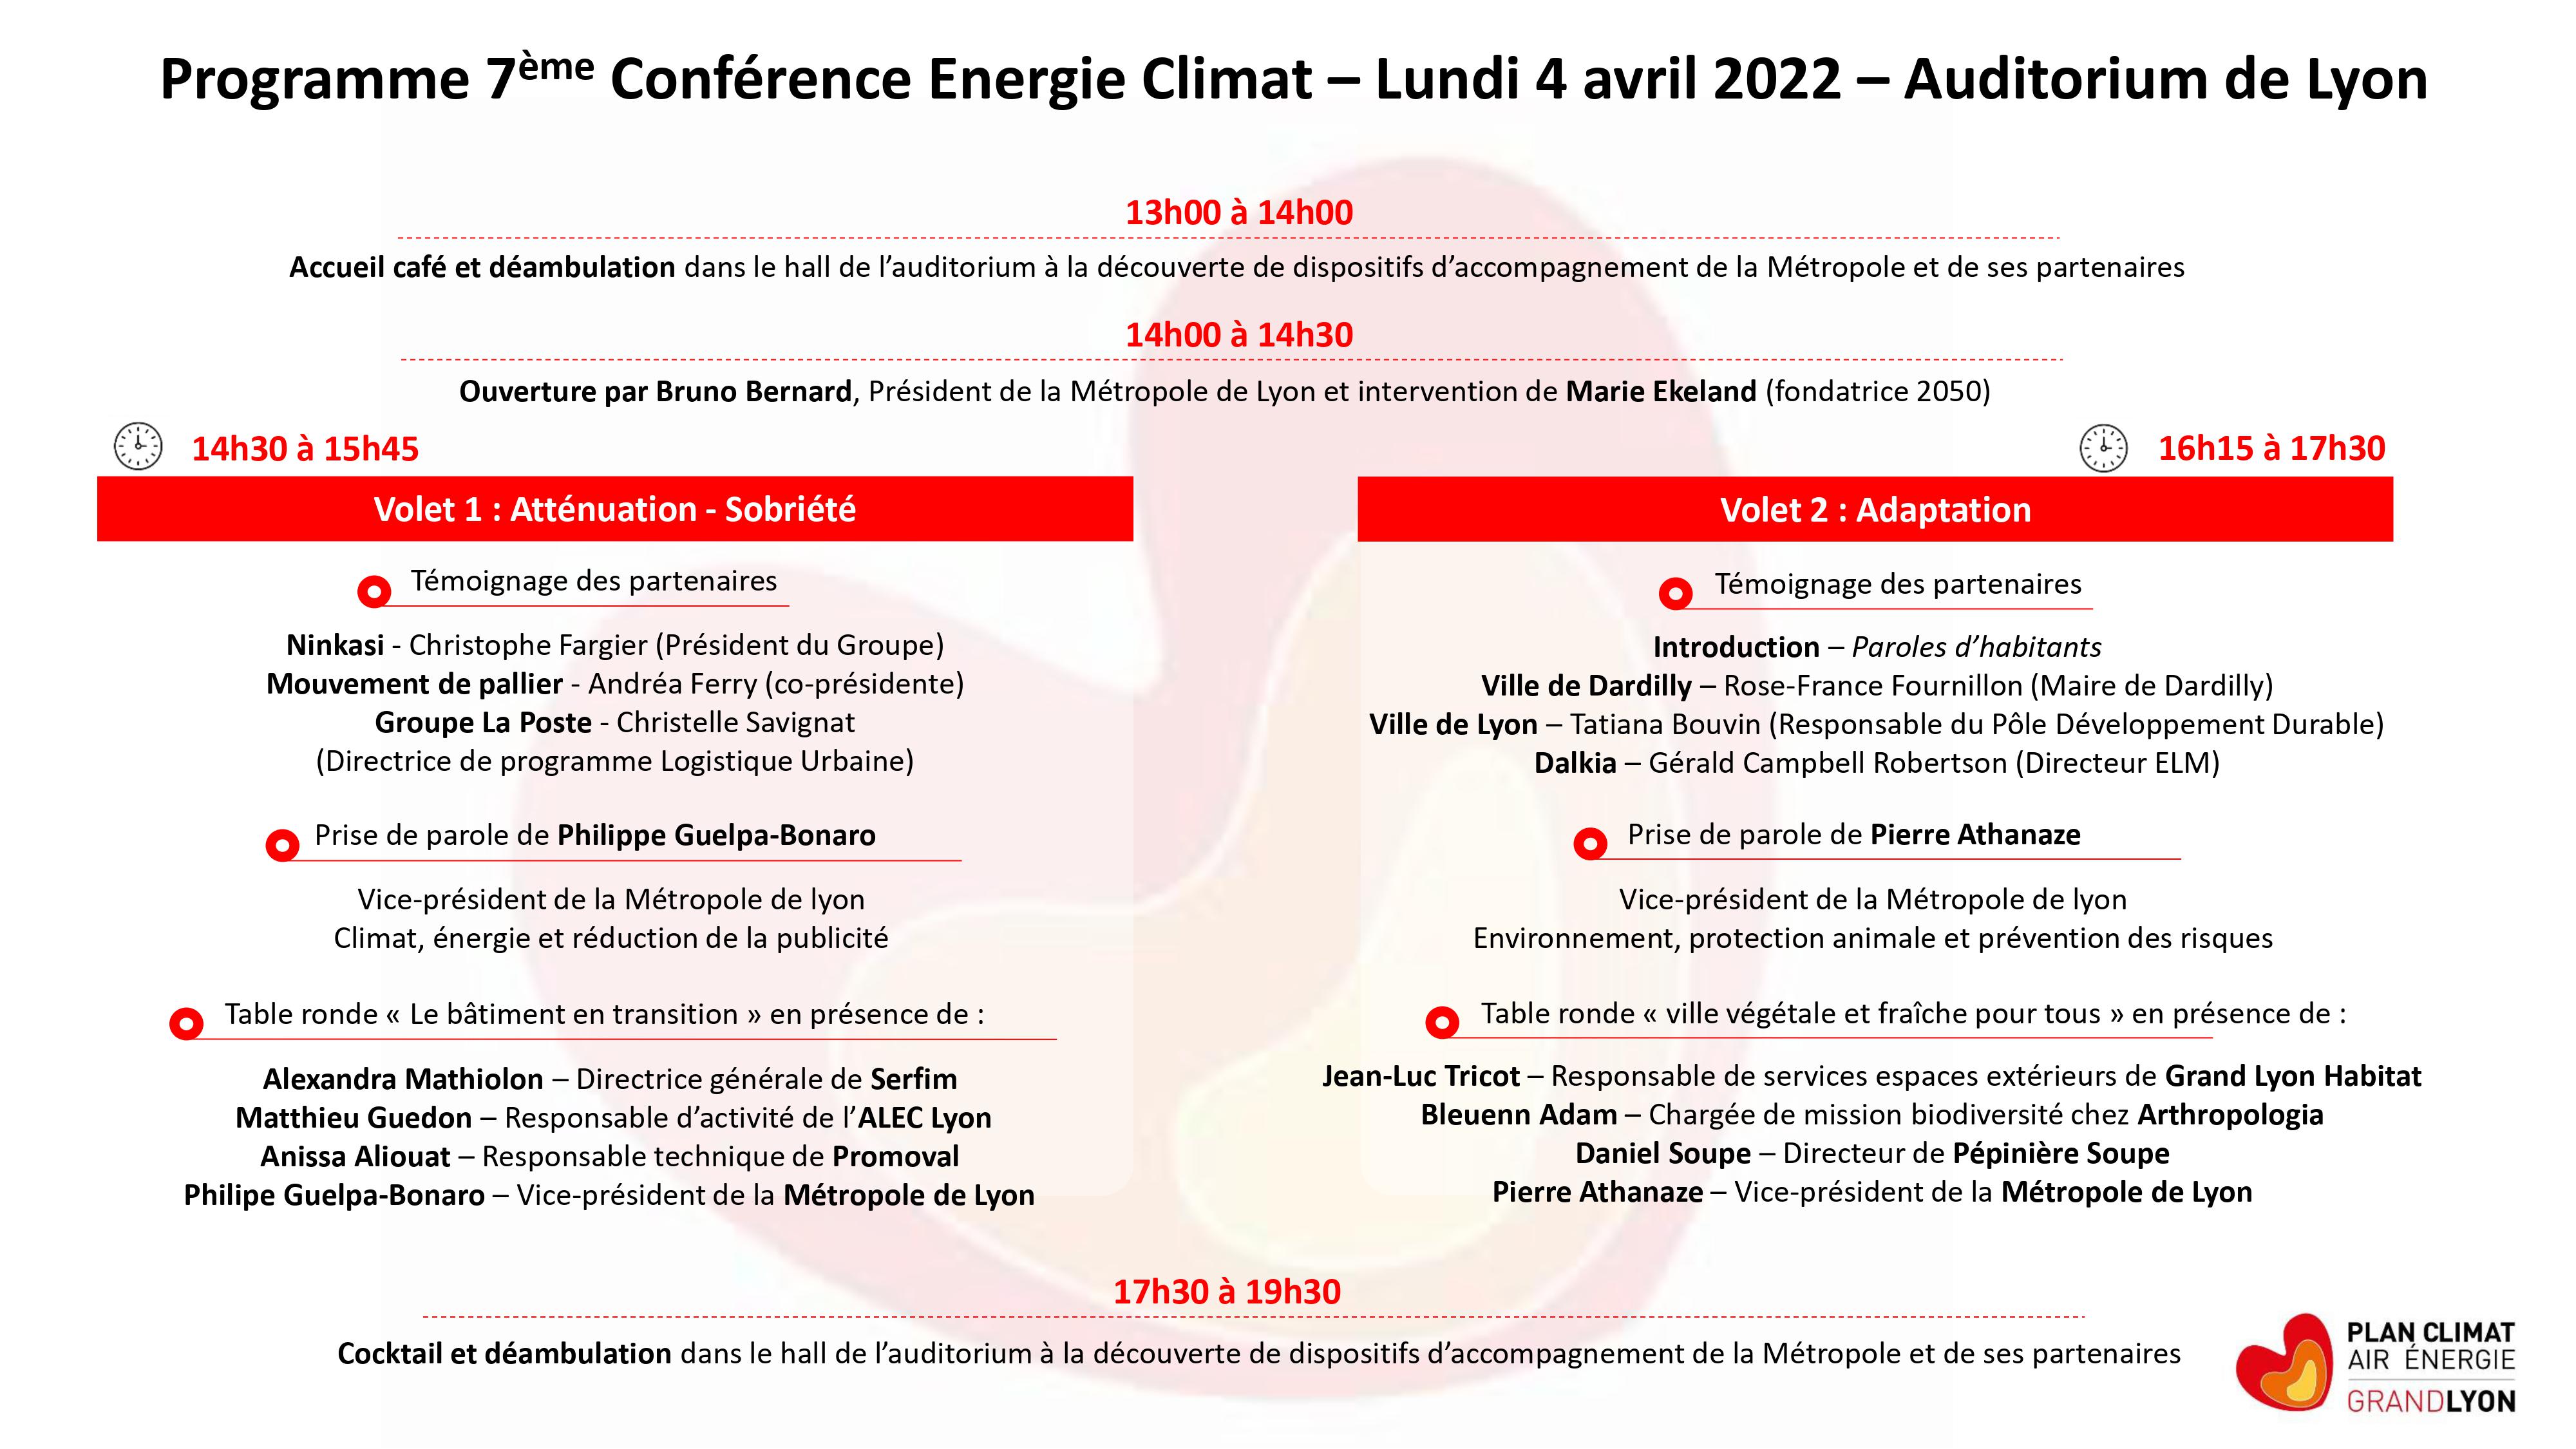 Programme - Conférence Energie Climat du 4 avril 2022